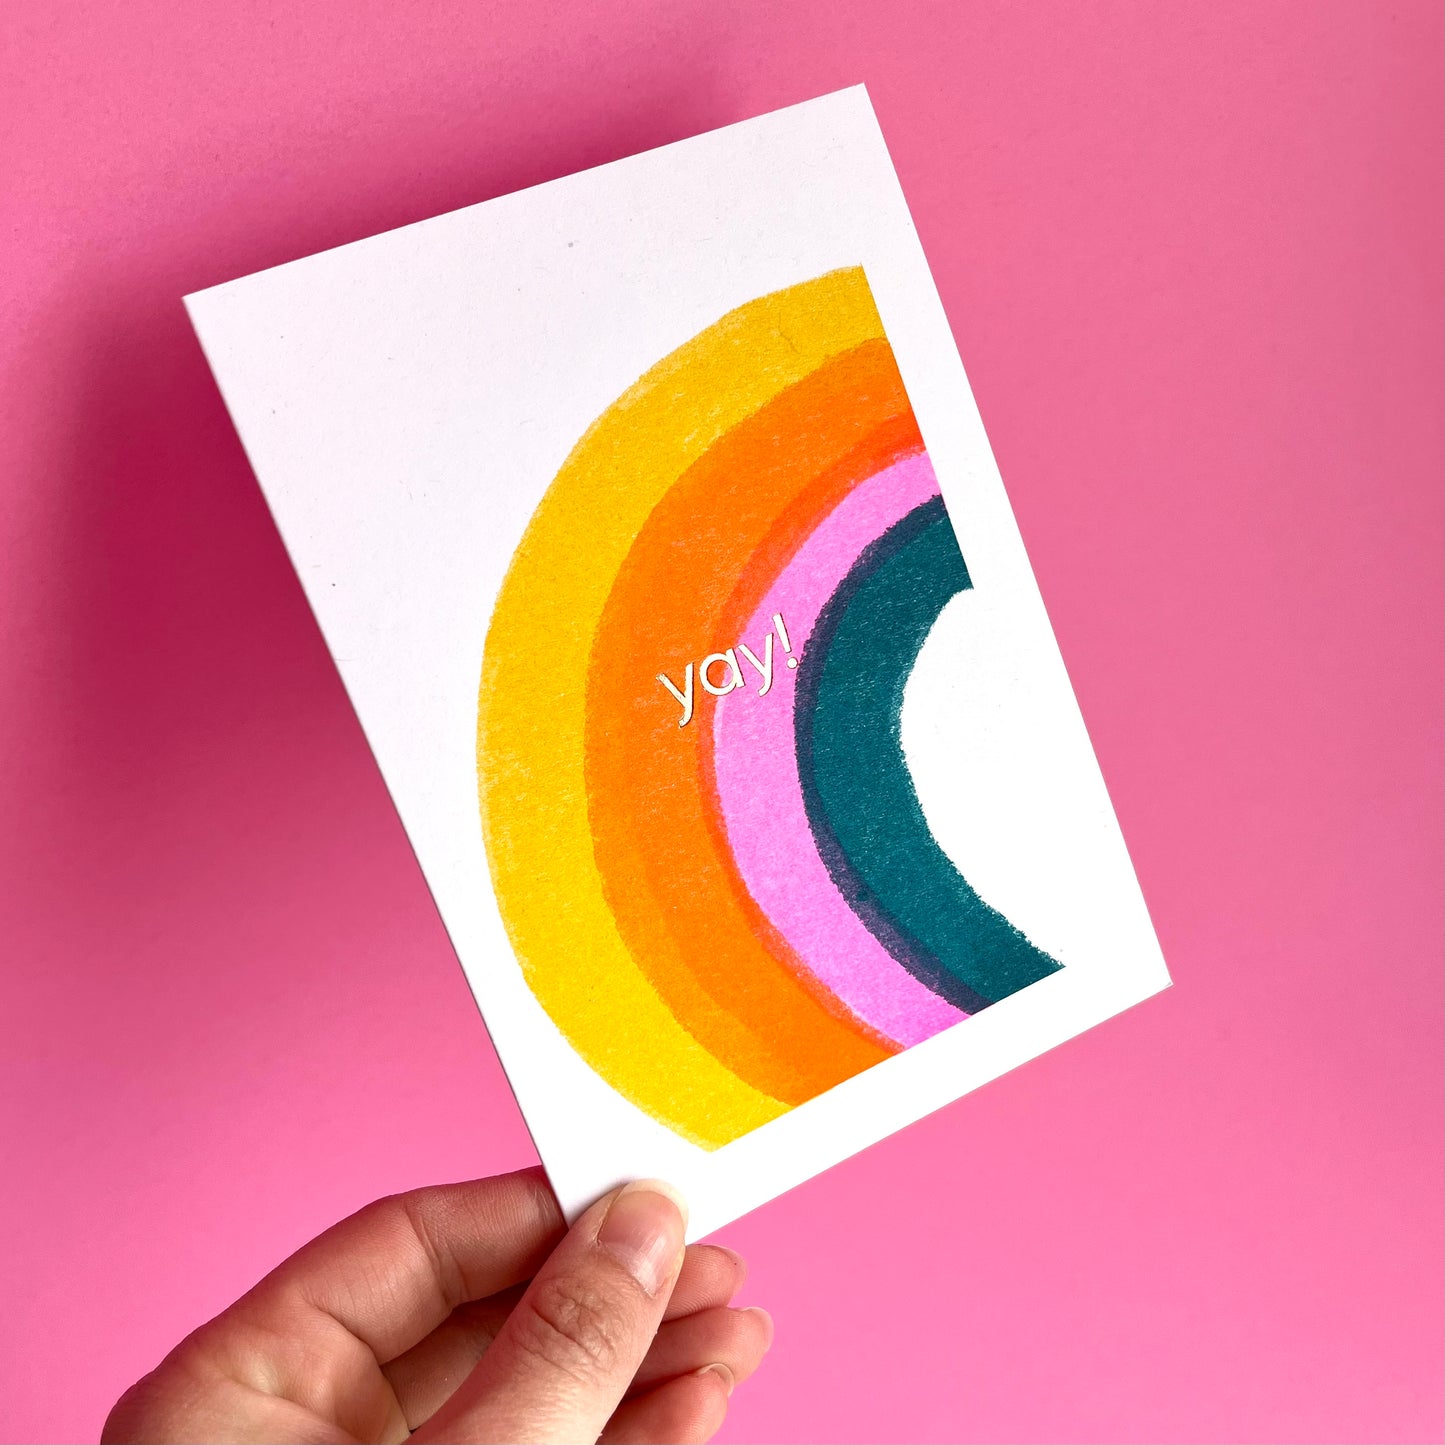 Yay! Card | Rainbow